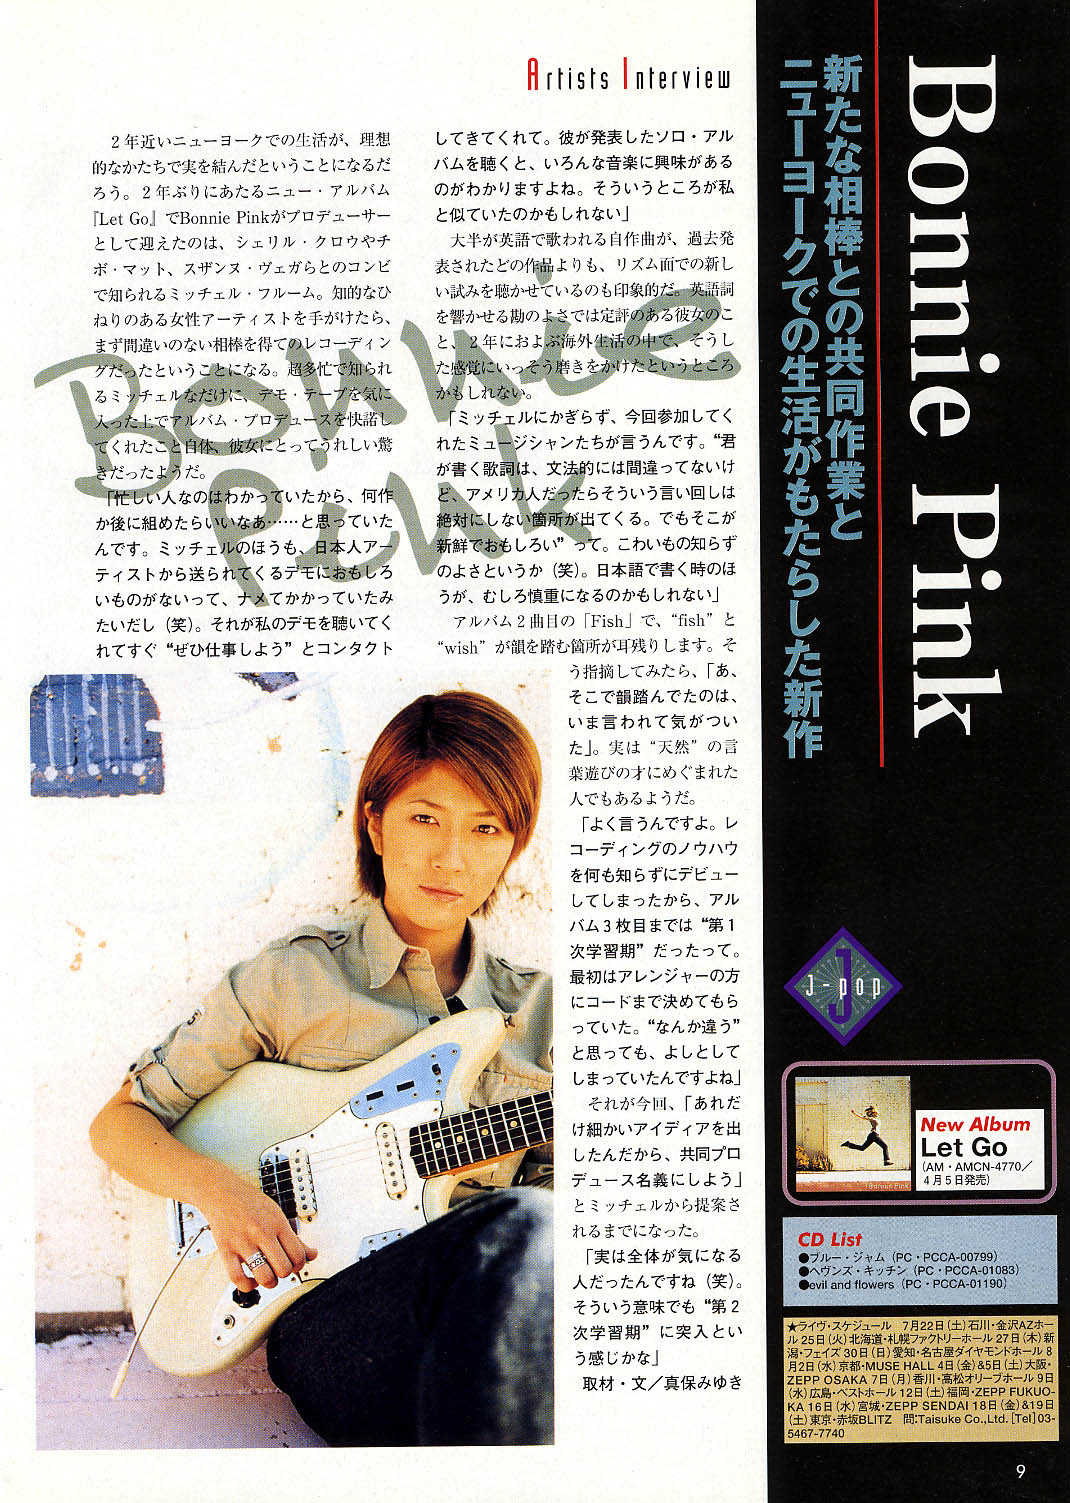 ボニーピンクの代名詞的な代表曲ヘブンズキッチンの英語歌詞の日本語訳和訳を見られるブログを紹介します。BONNIE PINK：Heaven's  Kitchen English Japanese lyrics | ♪ボニーリンク(BONNIE PINK ボニーピンクリンク集)